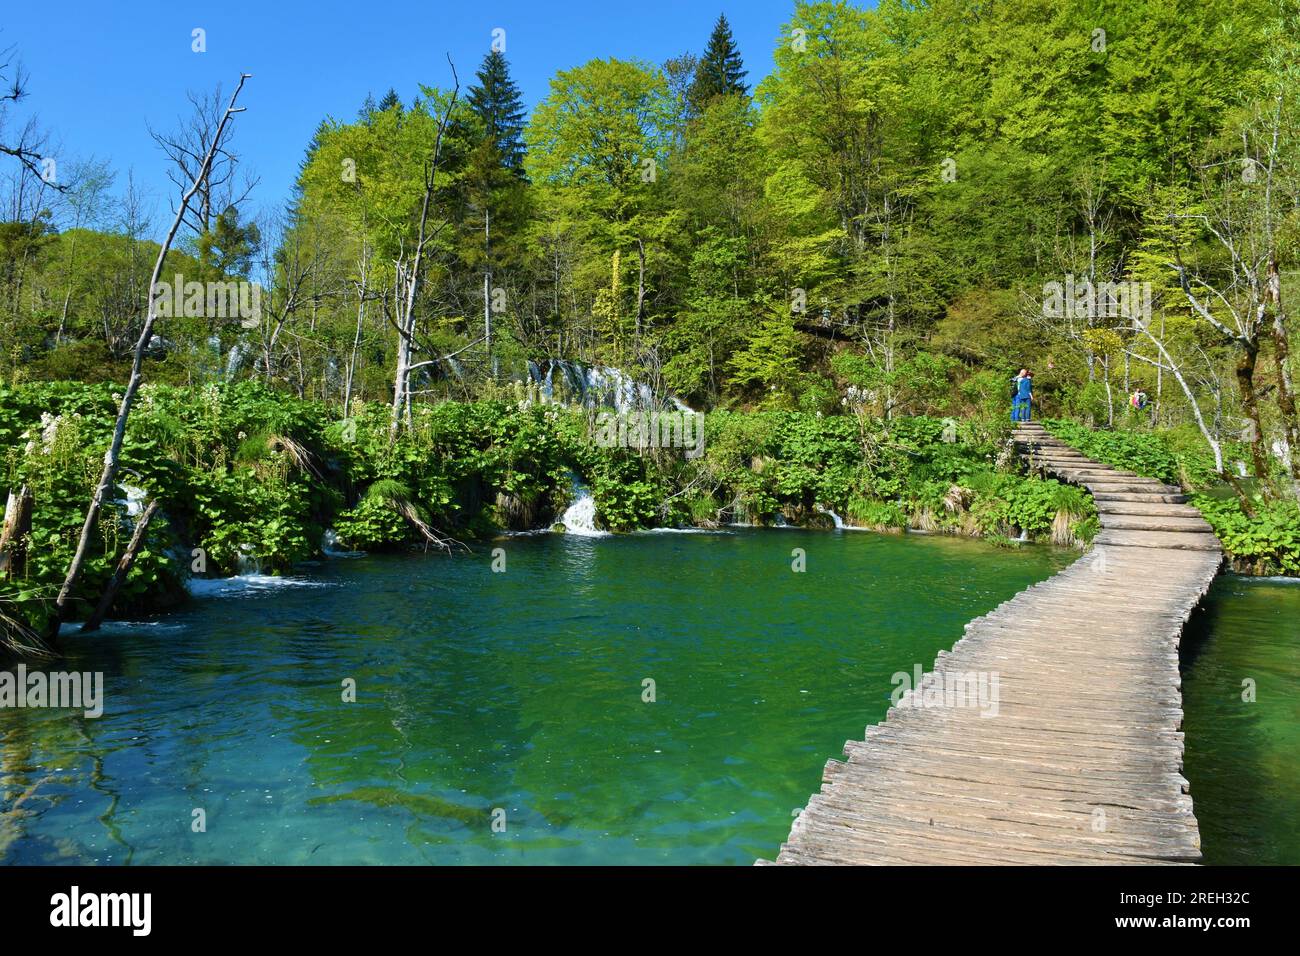 Camino de madera que conduce a través de un lago en el parque nacional de los lagos de Plitvice en el condado de Lika-Senj, Croacia Foto de stock